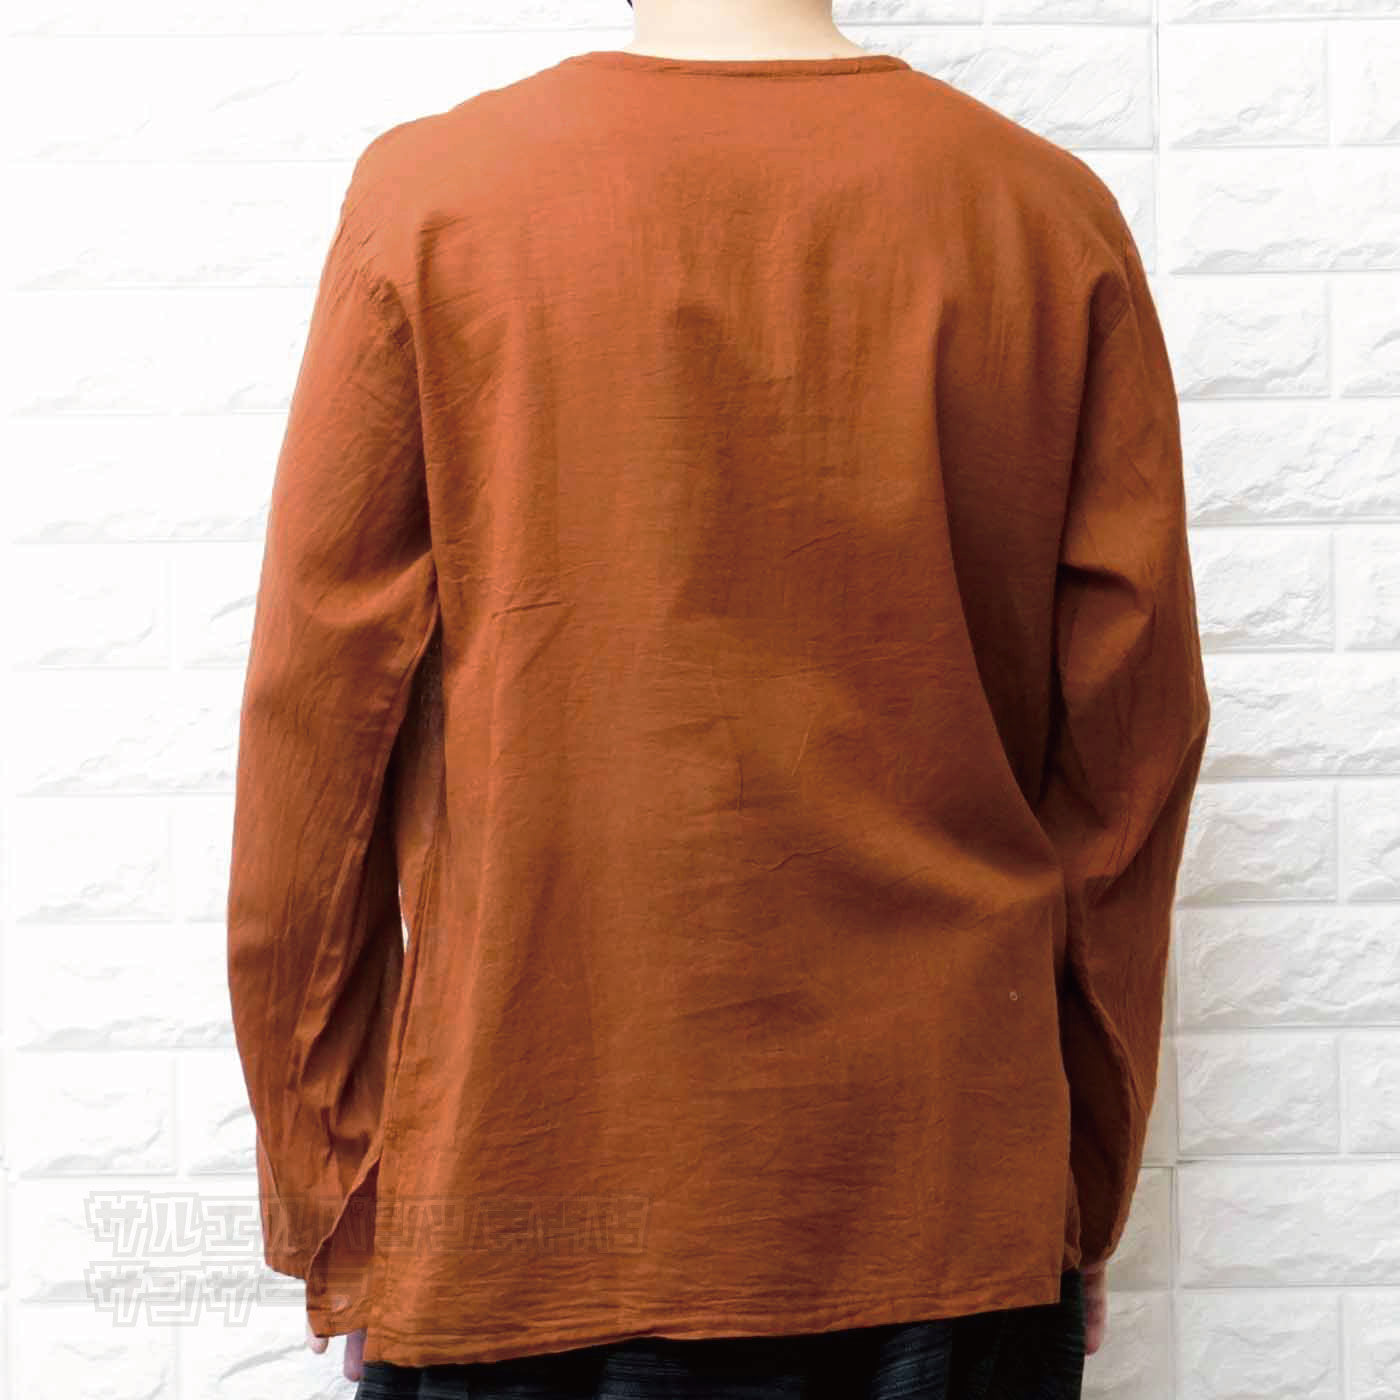 エスニック Tシャツ 長袖 クルタシャツ トップス メンズ レディース ユニセックス フェザー 羽根 大きめサイズ ゆったり アジアン ファッションブラック